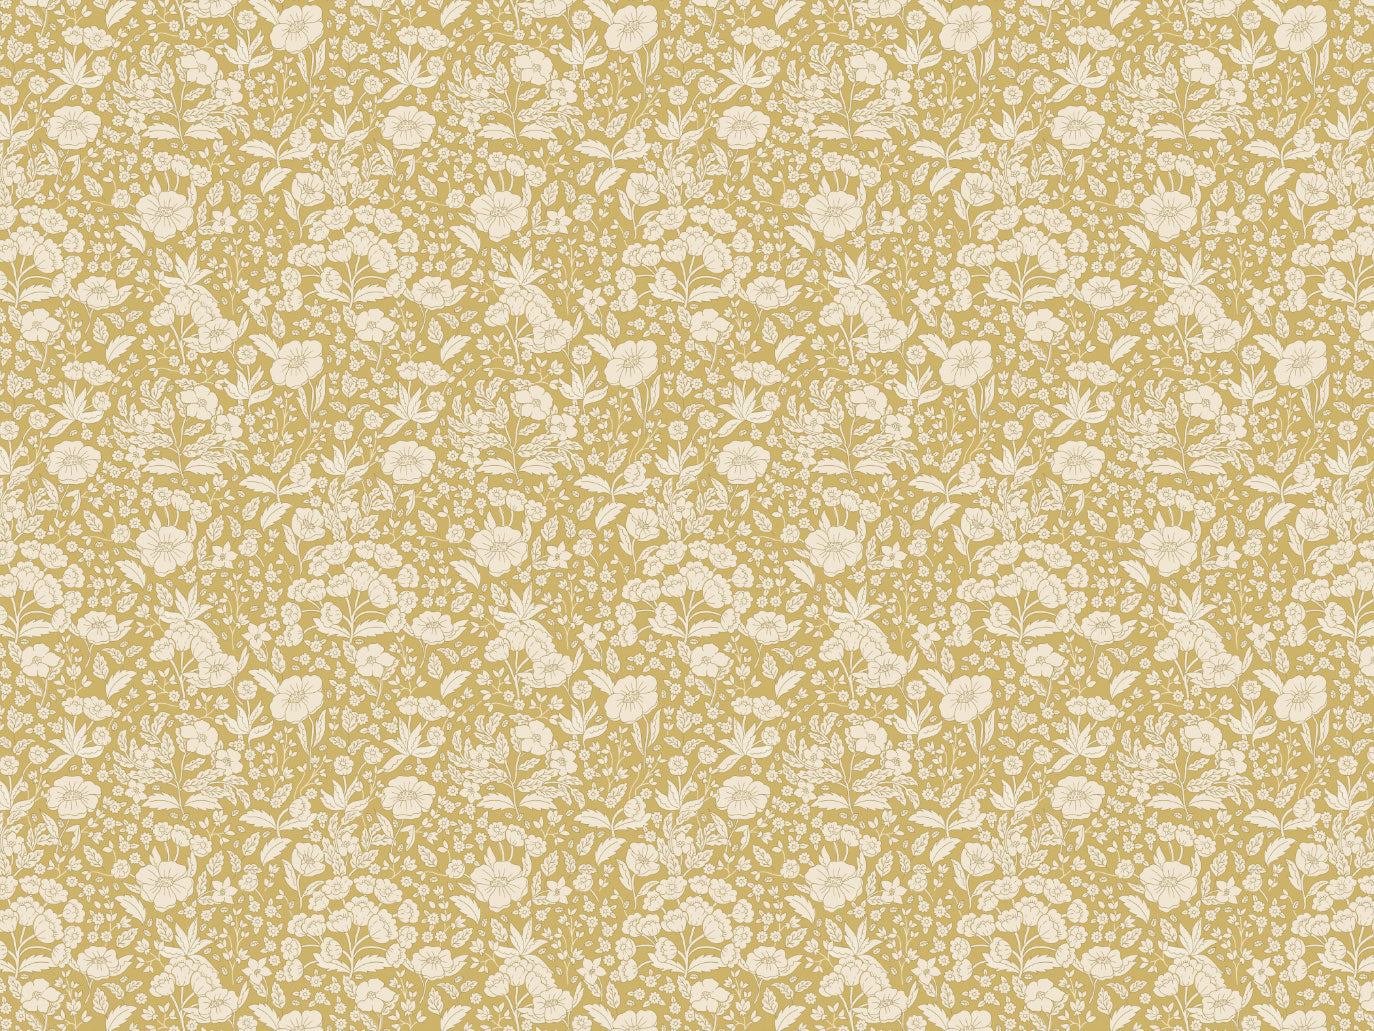 Summer Gray Wallpaper - Doris - Mustard